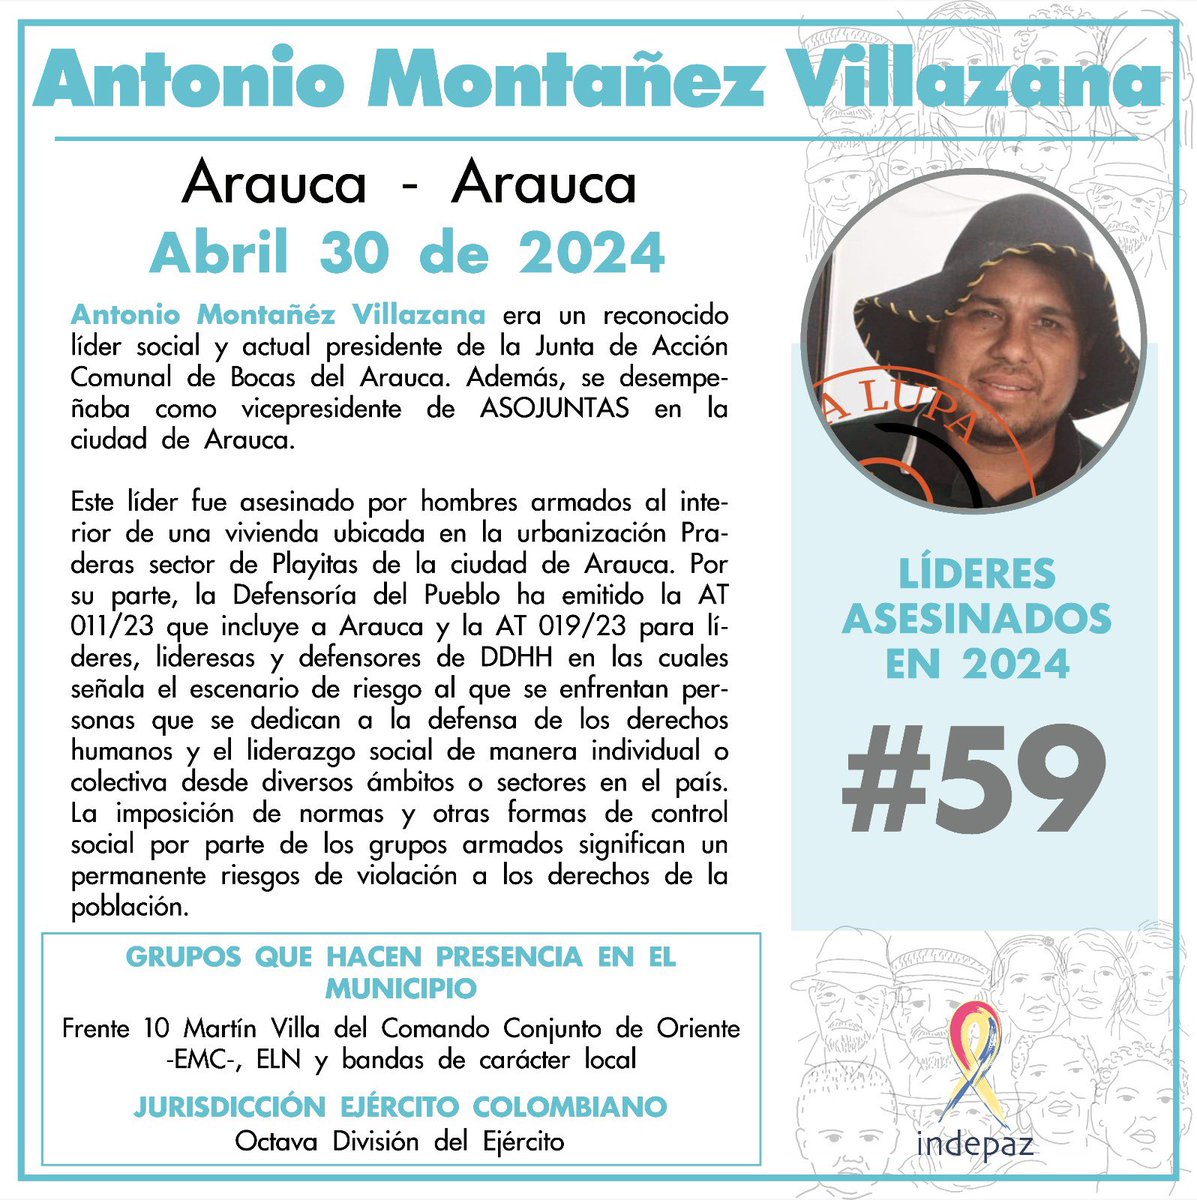 59 Líderes asesinados en 2024 Antonio Montañéz Villazana 30/04/24 Arauca, Arauca Antonio Montañéz era un reconocido líder social y actual presidente de la Junta de Acción Comunal de Bocas del Arauca. Además, se desempeñaba como vicepresidente de ASOJUNTAS en la ciudad de Arauca